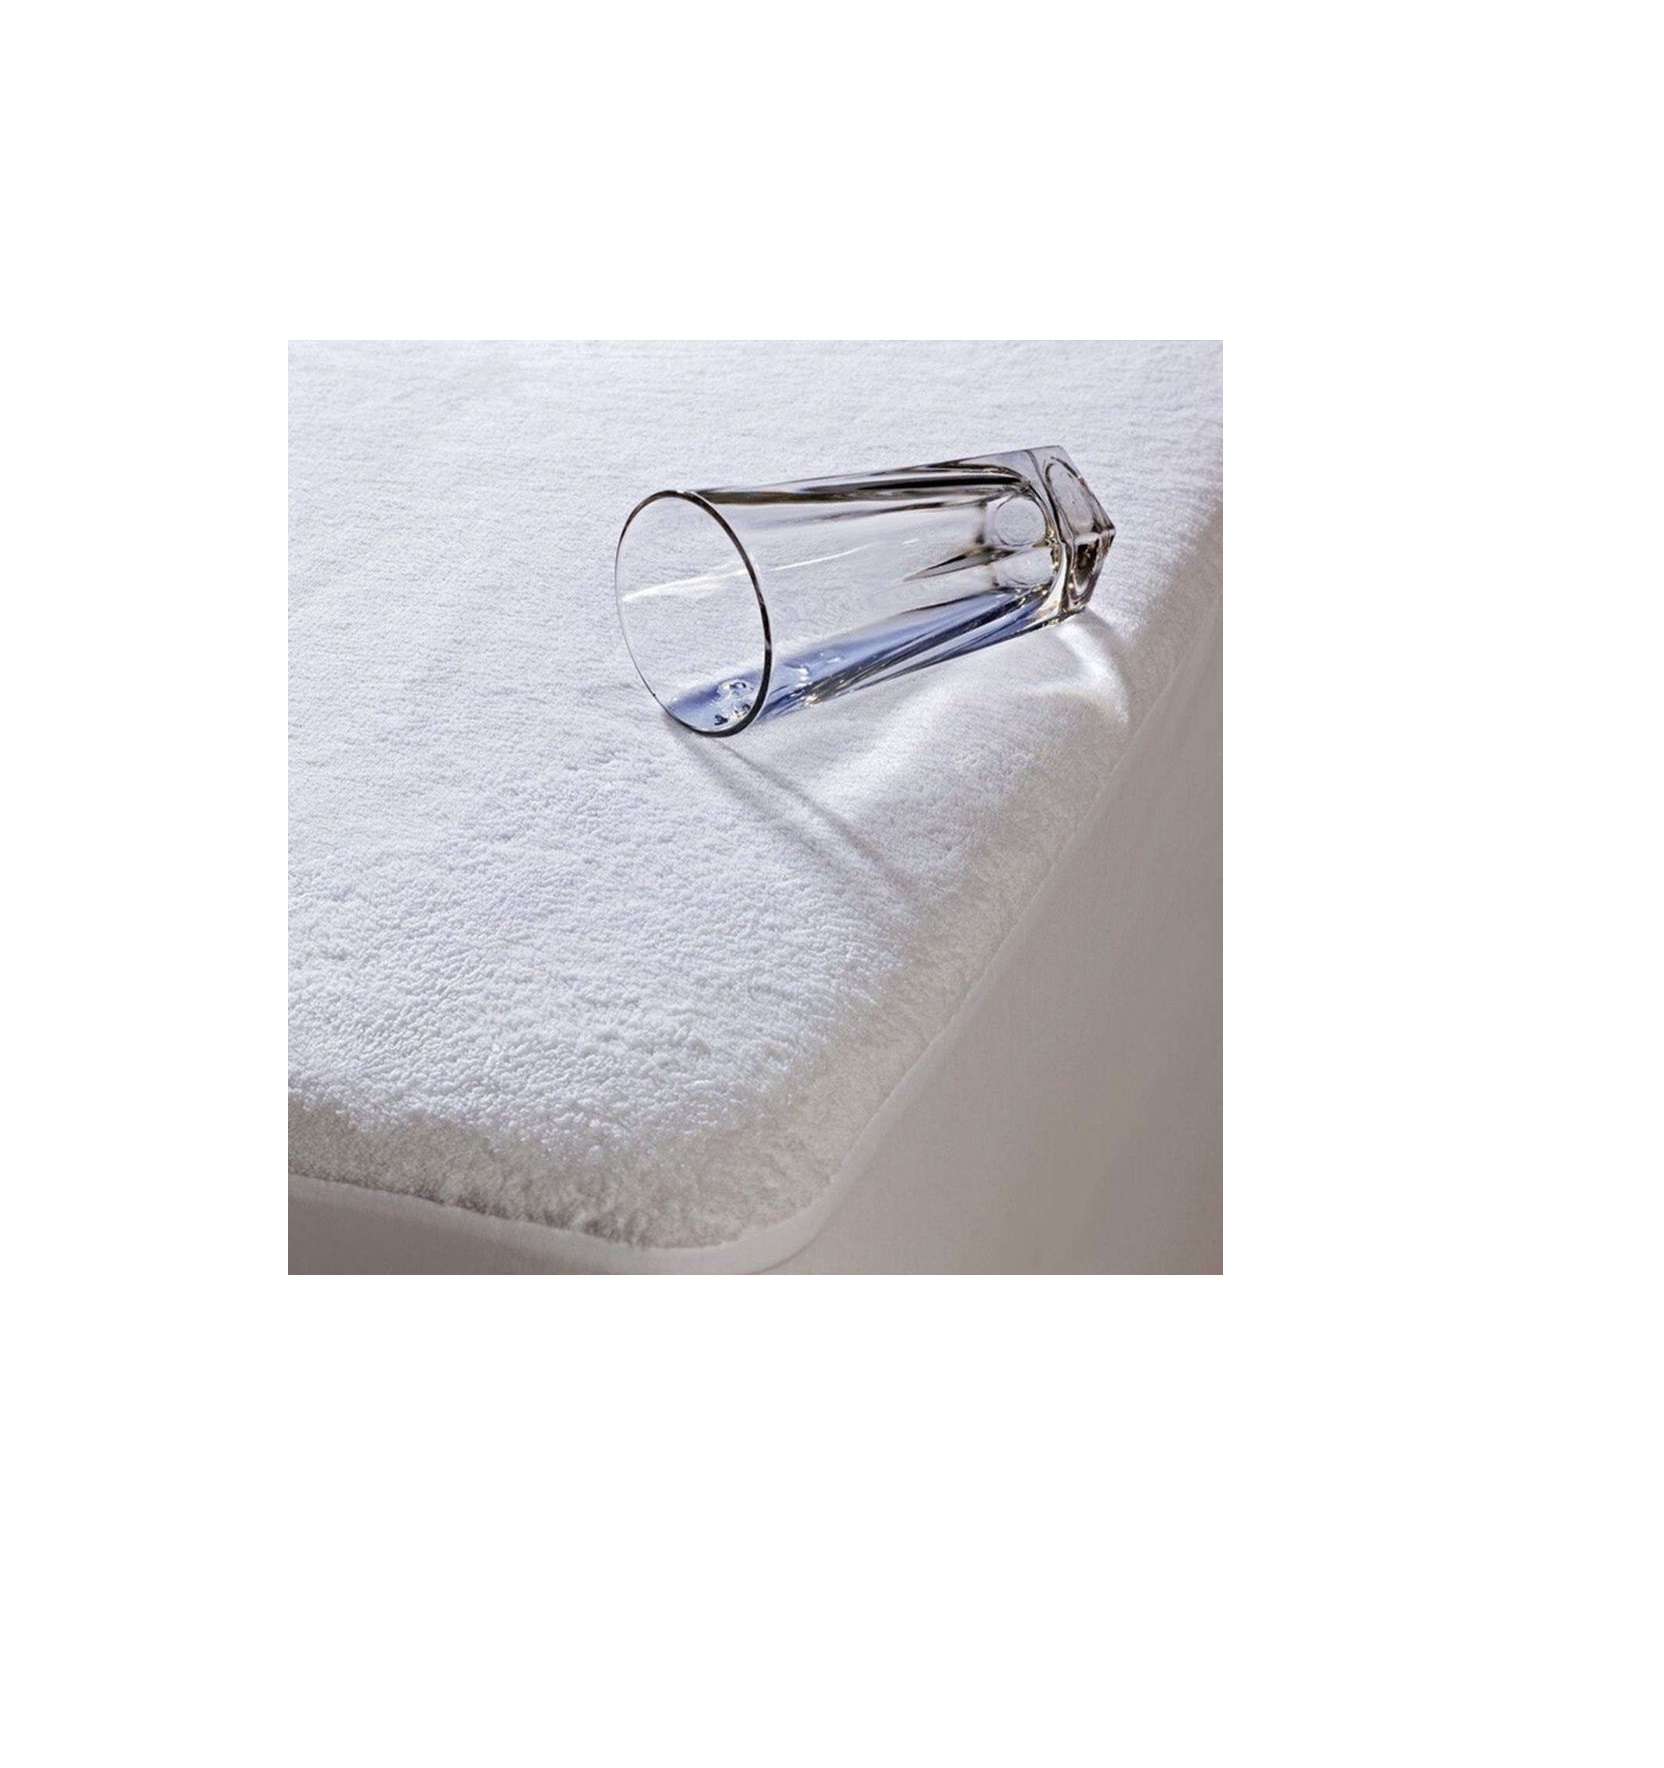 Mattress Elegante Κάλυμμα στρώματος αδιάβροχο (επίστρωμα) 150 x 200 cm + 35 cm